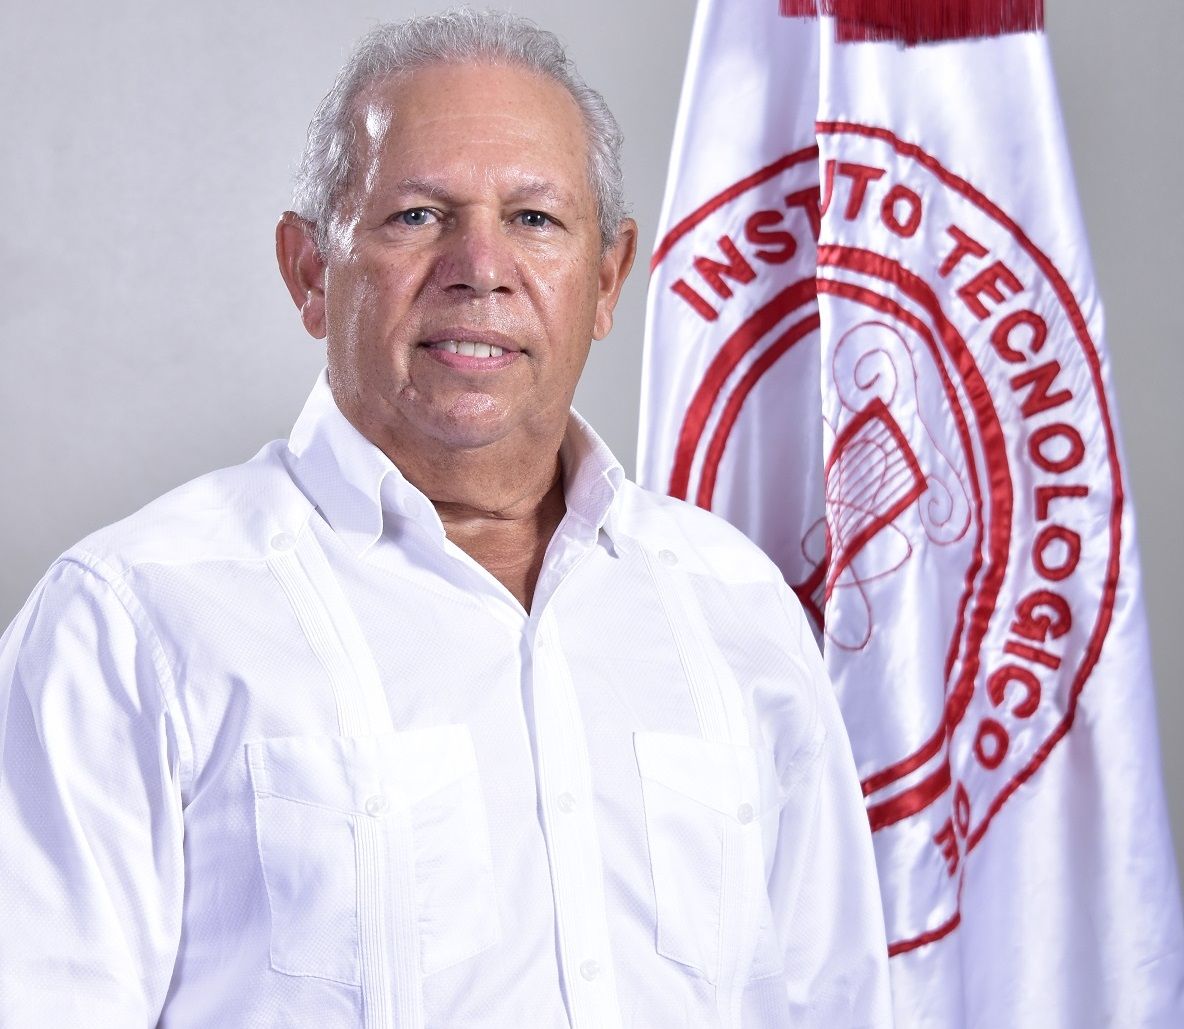 Jose%20Manuel%20Santos.JPG-1-30a80801 Instituto Tecnológico de Santo Domingo - José Manuel Santos is elected President of the Board of Regents of INTEC